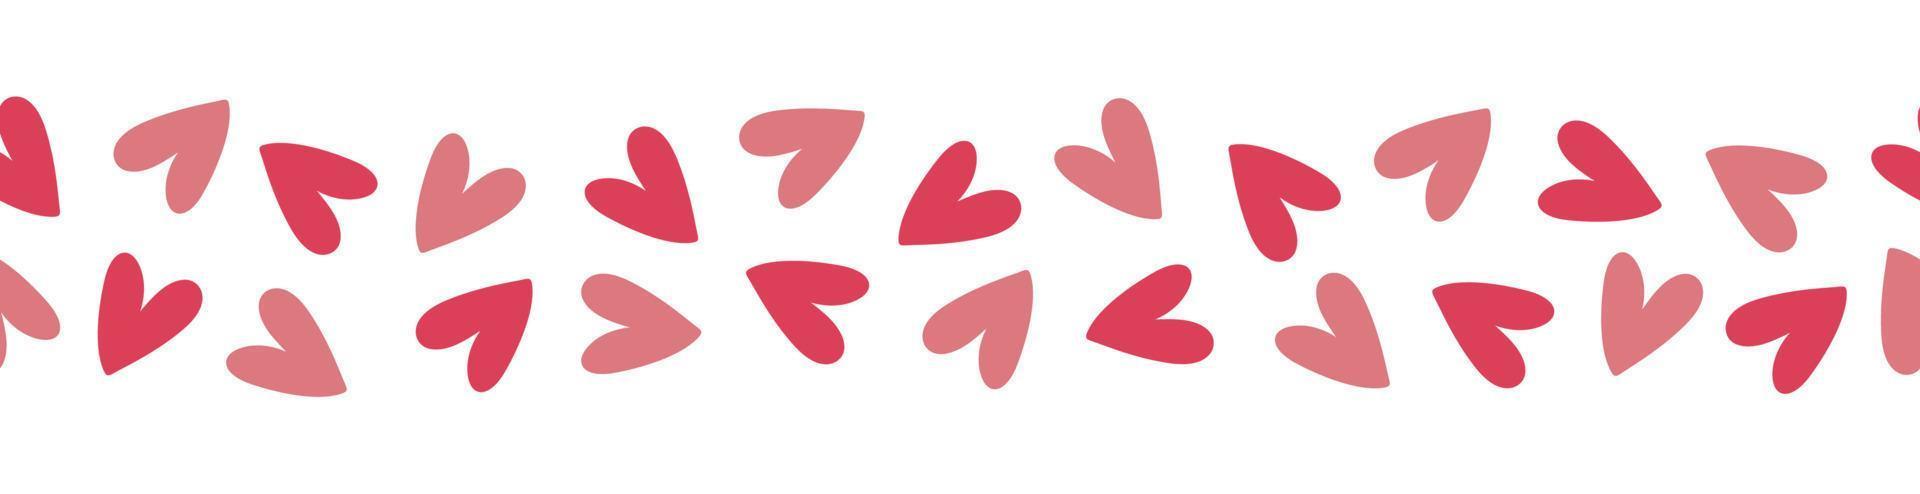 borda perfeita com corações vermelhos e rosa. estilo doodle desenhado à mão vetor